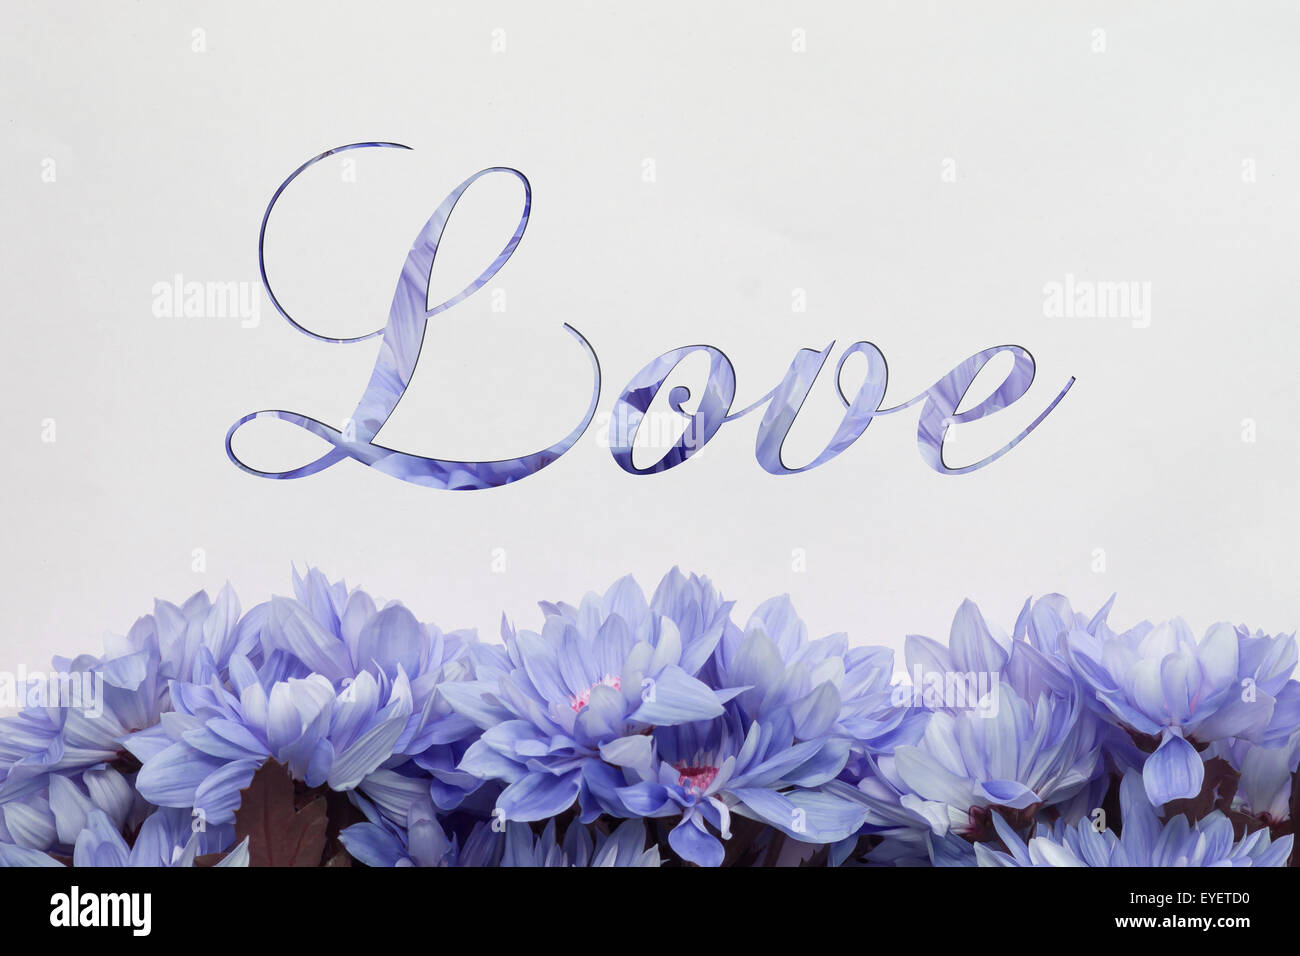 Amor flores - texto manuscrito y encantadora decoración floral Foto de stock